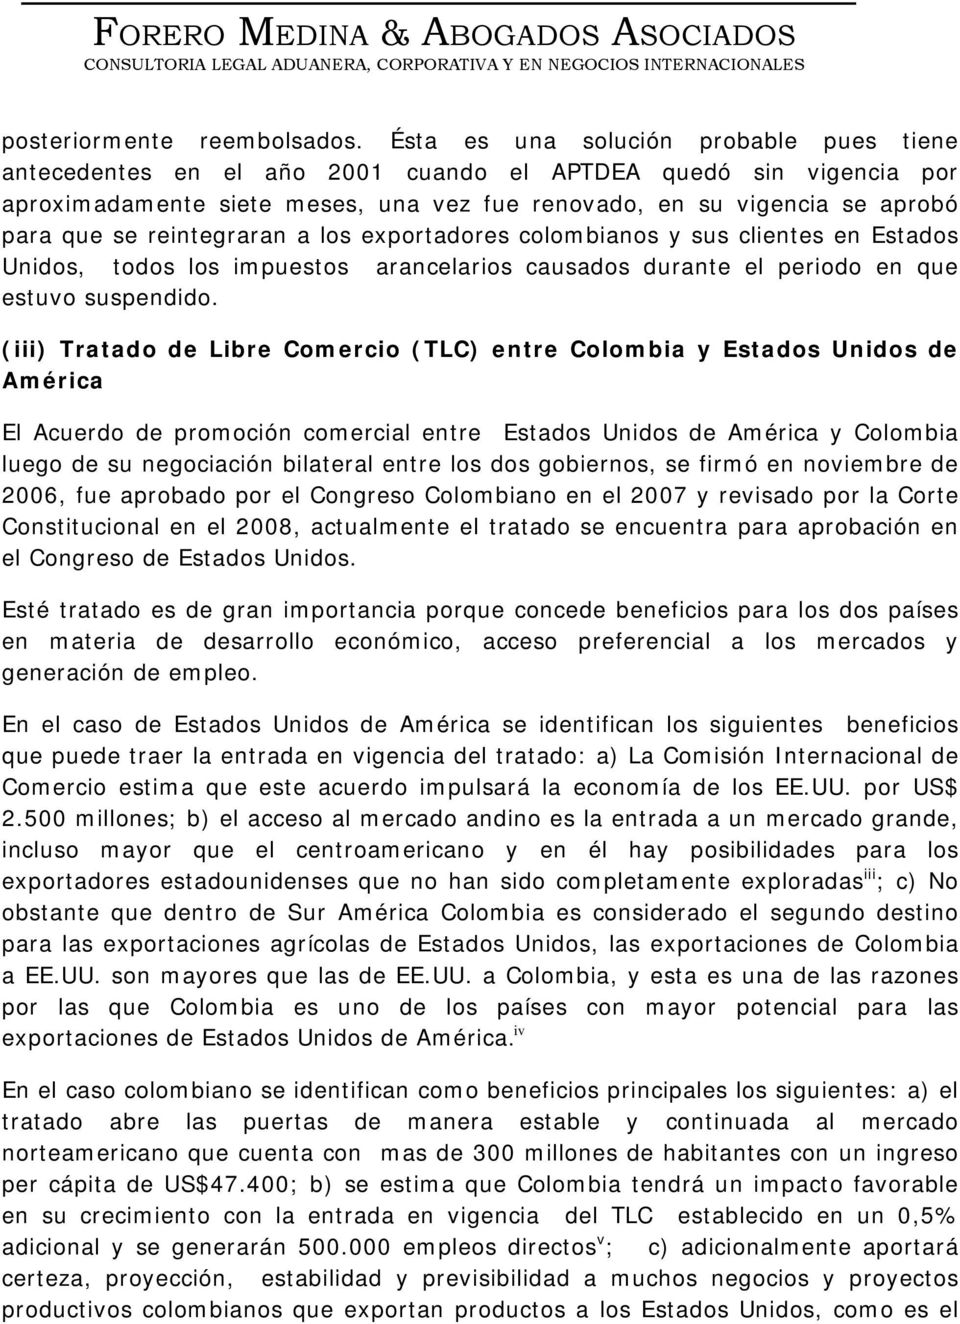 (iii) Tratado de Libre Comercio (TLC) entre Colombia y Estados Unidos de América El Acuerdo de promoción comercial entre Estados Unidos de América y Colombia luego de su negociación bilateral entre